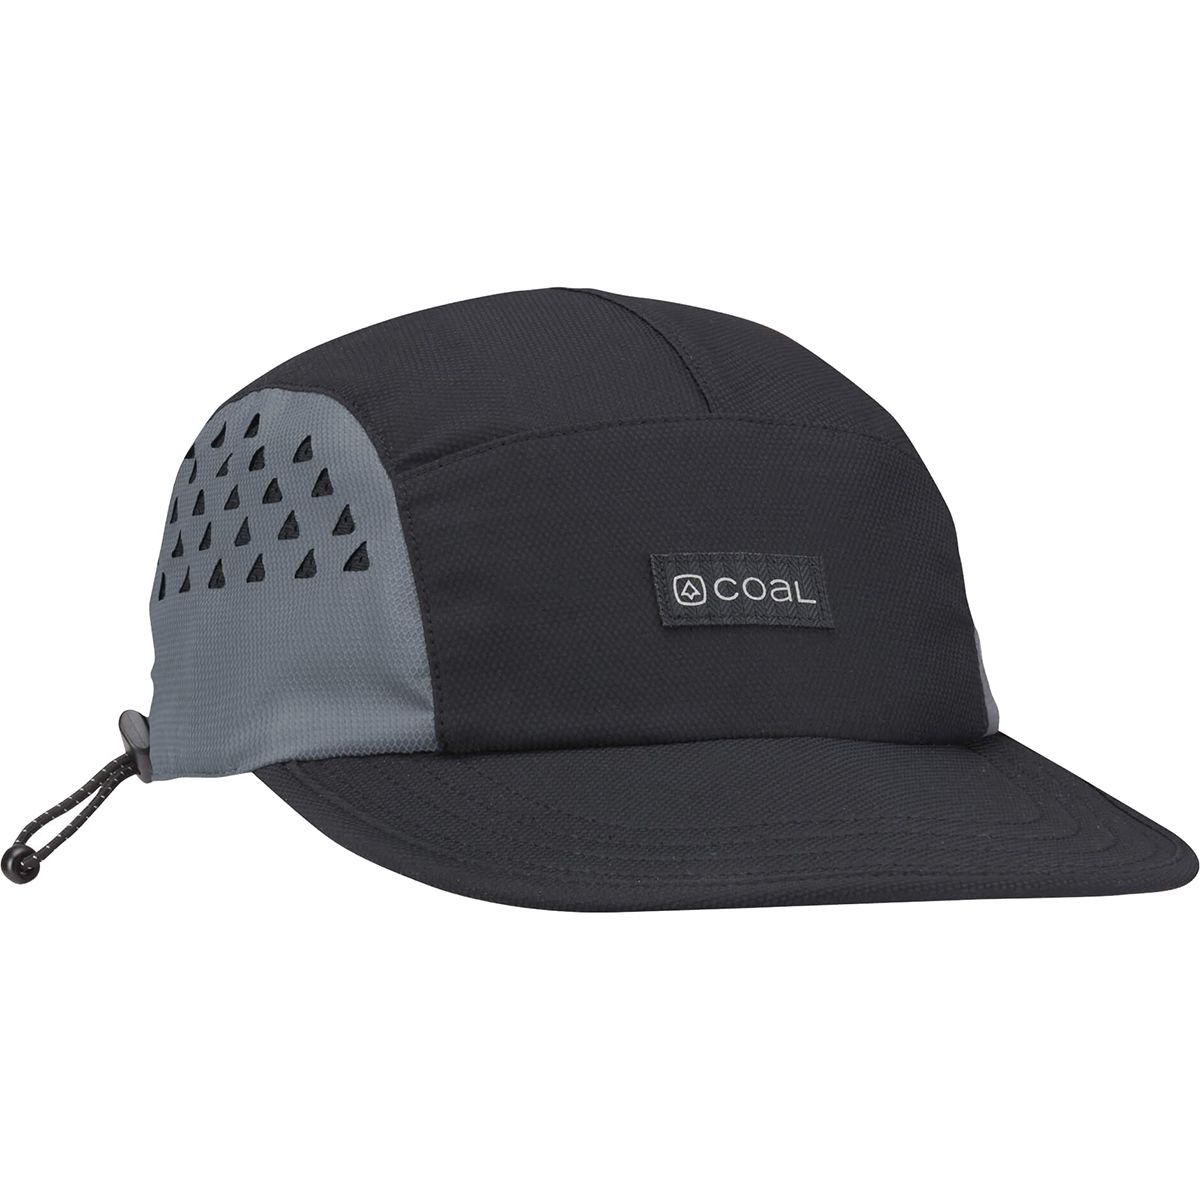 Шляпа Provo с 5 панелями Coal